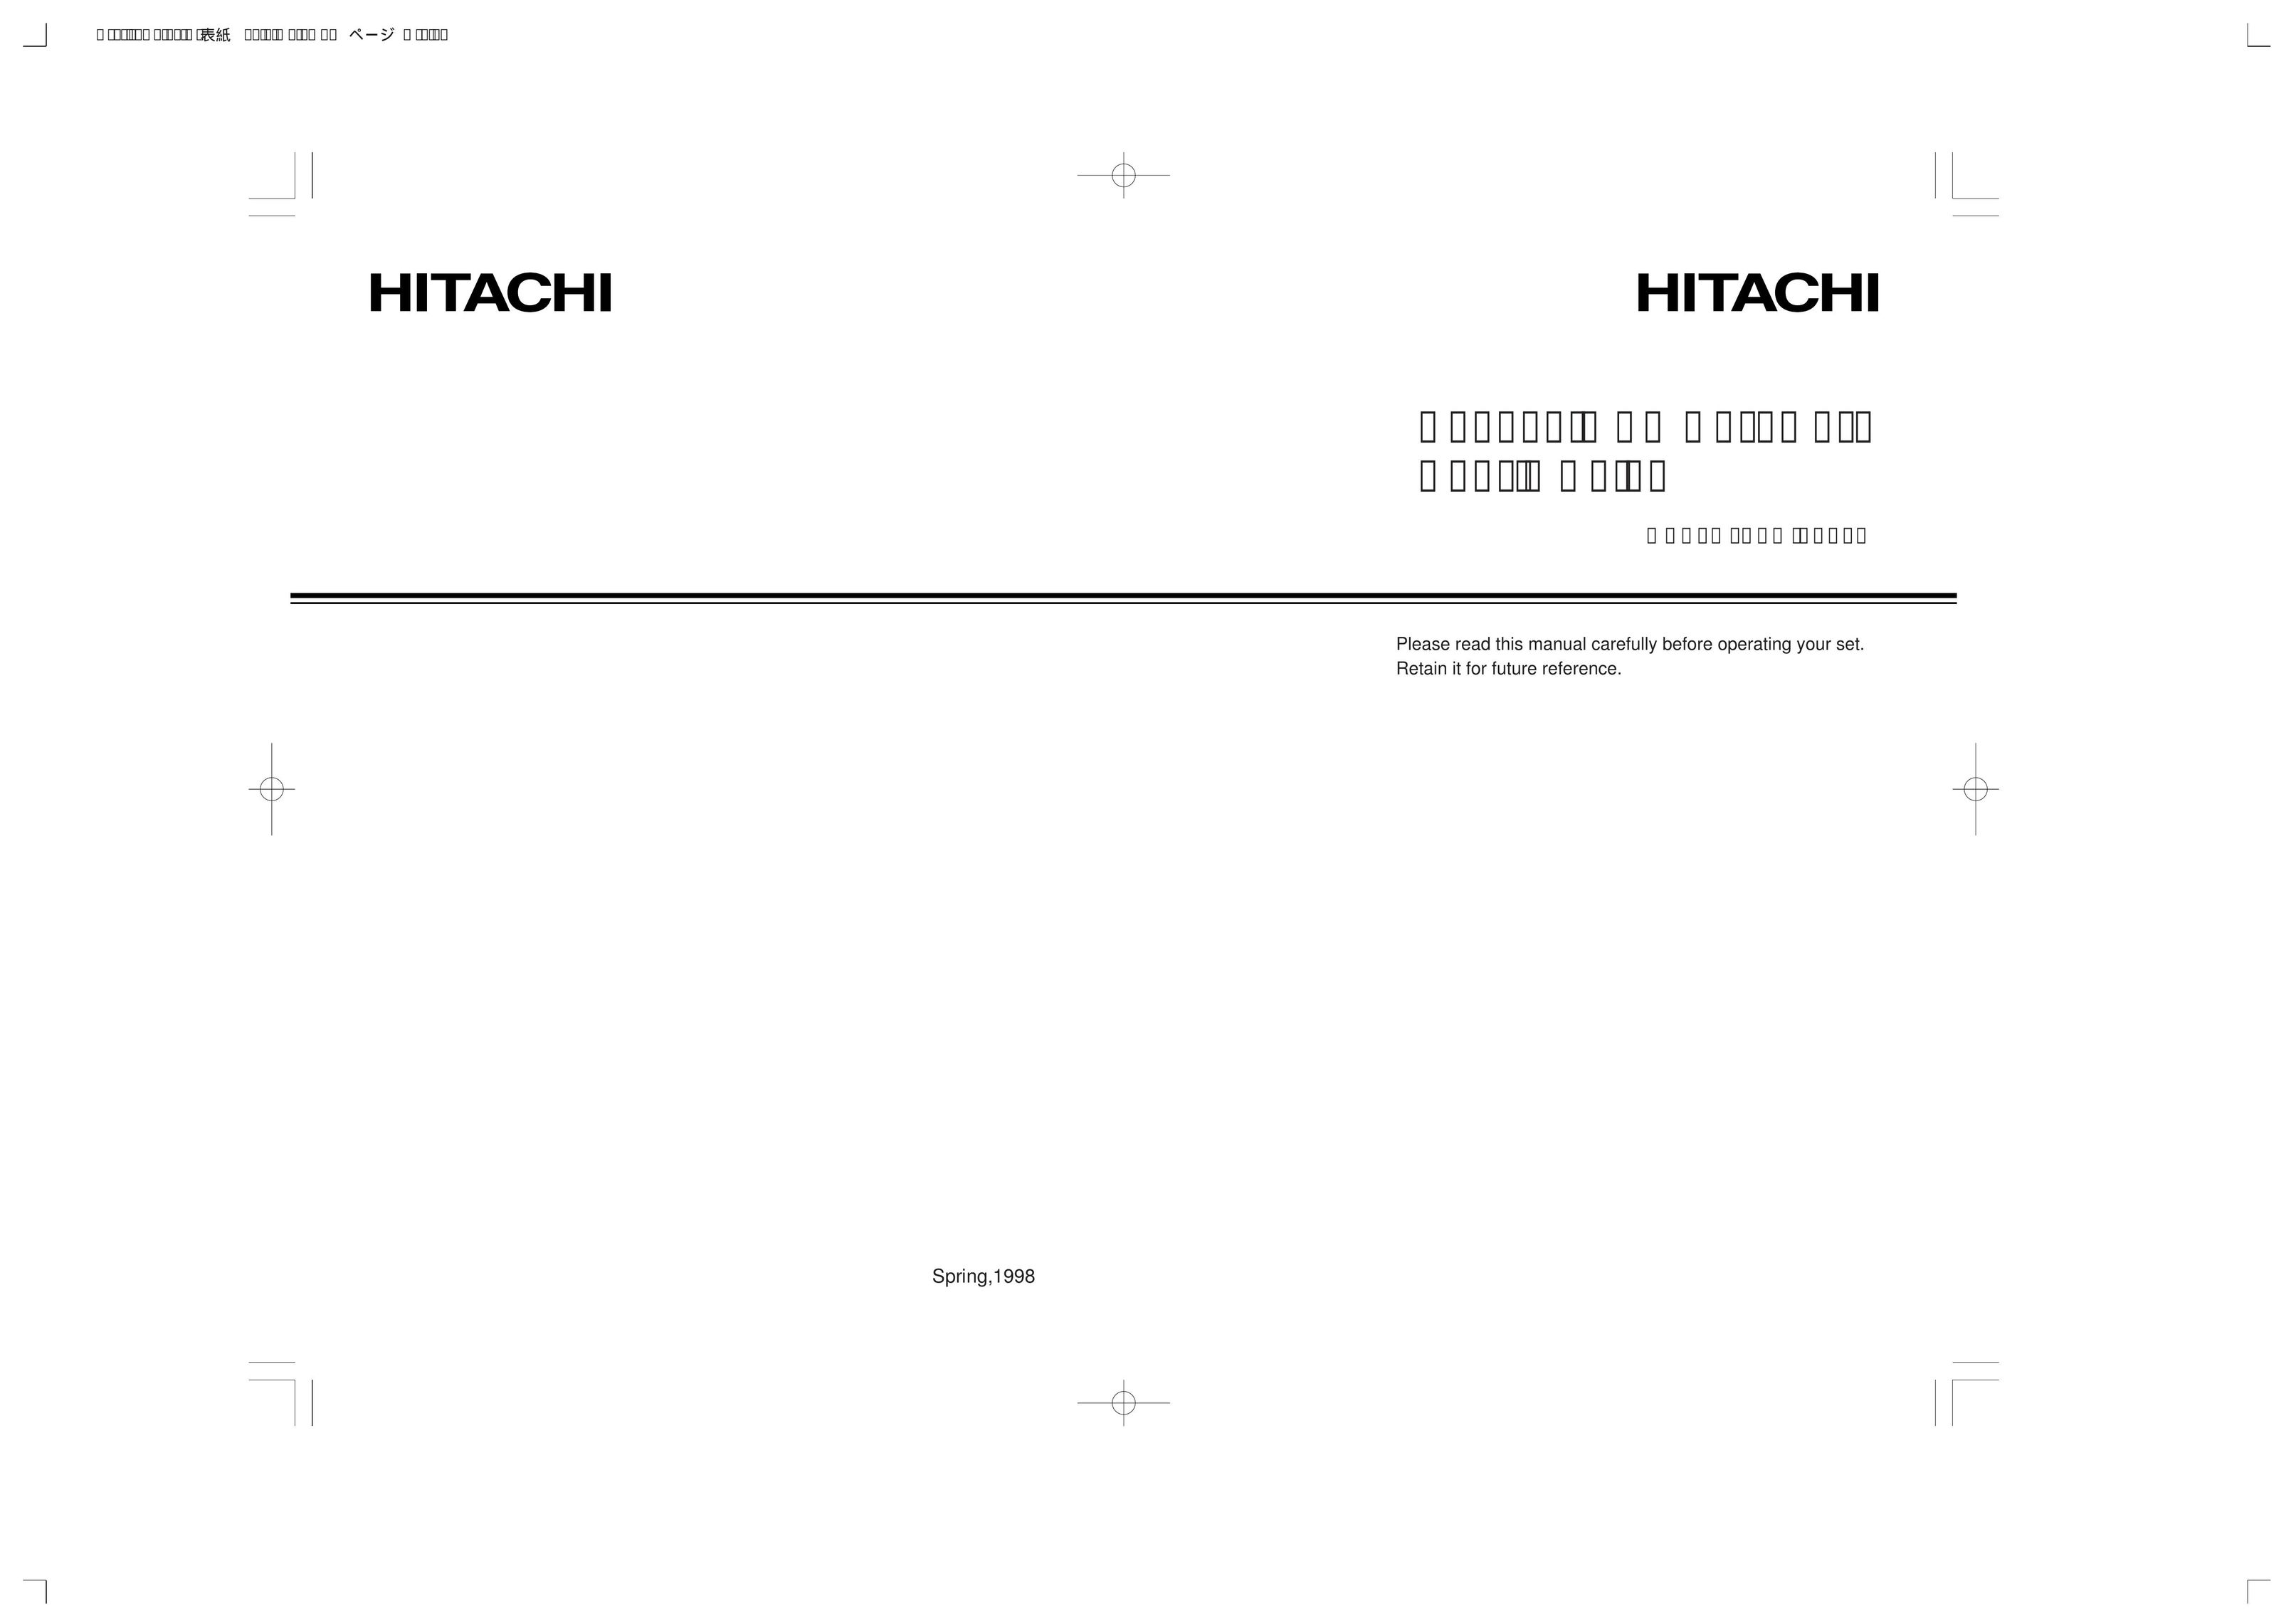 Hitachi HPW-200EC PDAs & Smartphones User Manual